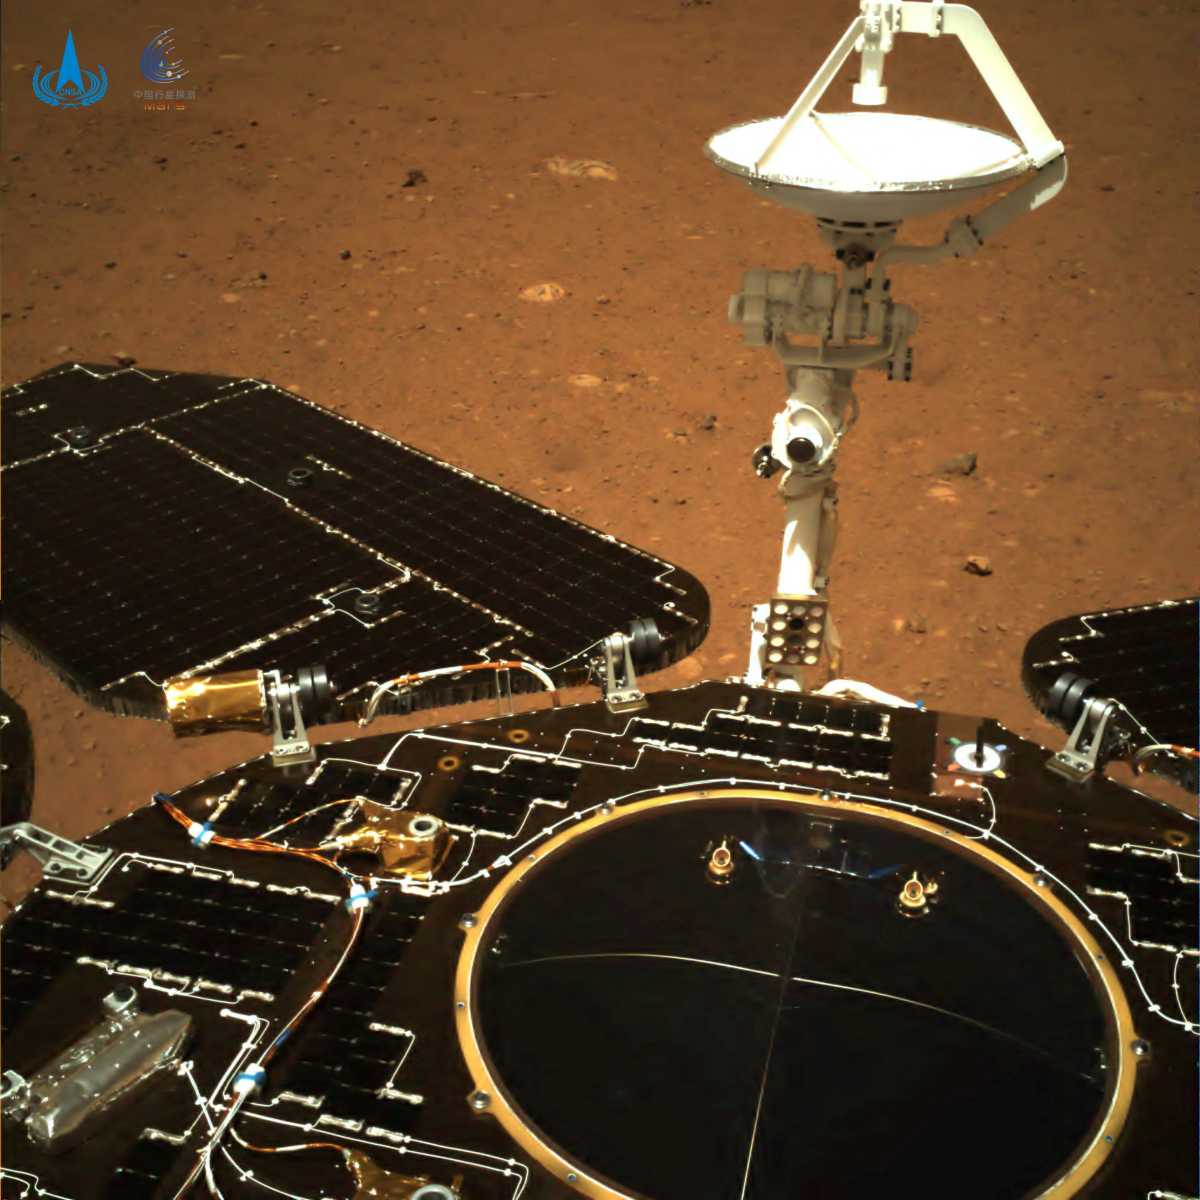 Το κινέζικο «Ζουρόνγκ» πάτησε στον πλανήτη Άρη – Εντυπωσιακές εικόνες